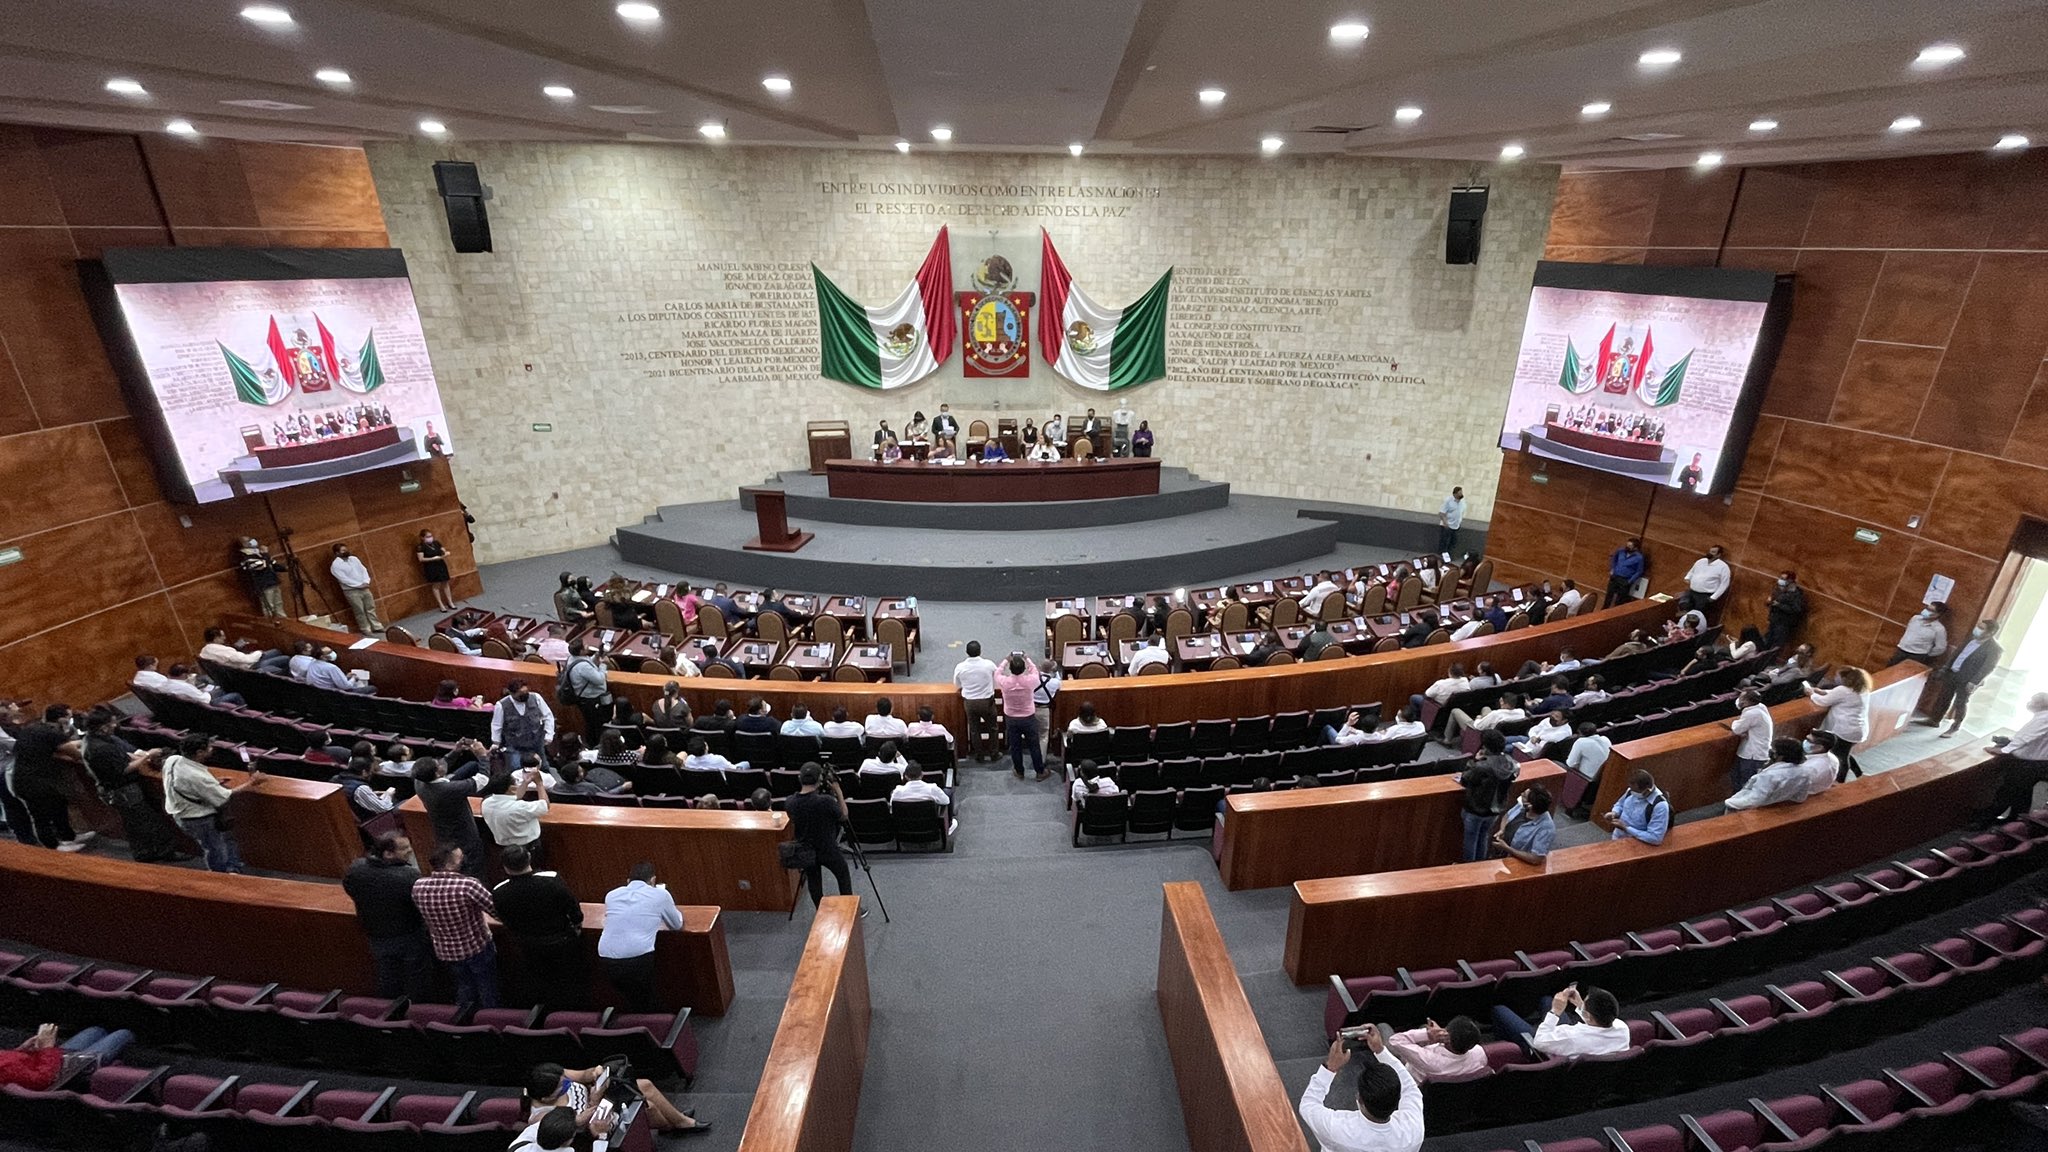 ▶ Inicia proceso para dividir fracción de Morena en el Congreso de Oaxaca